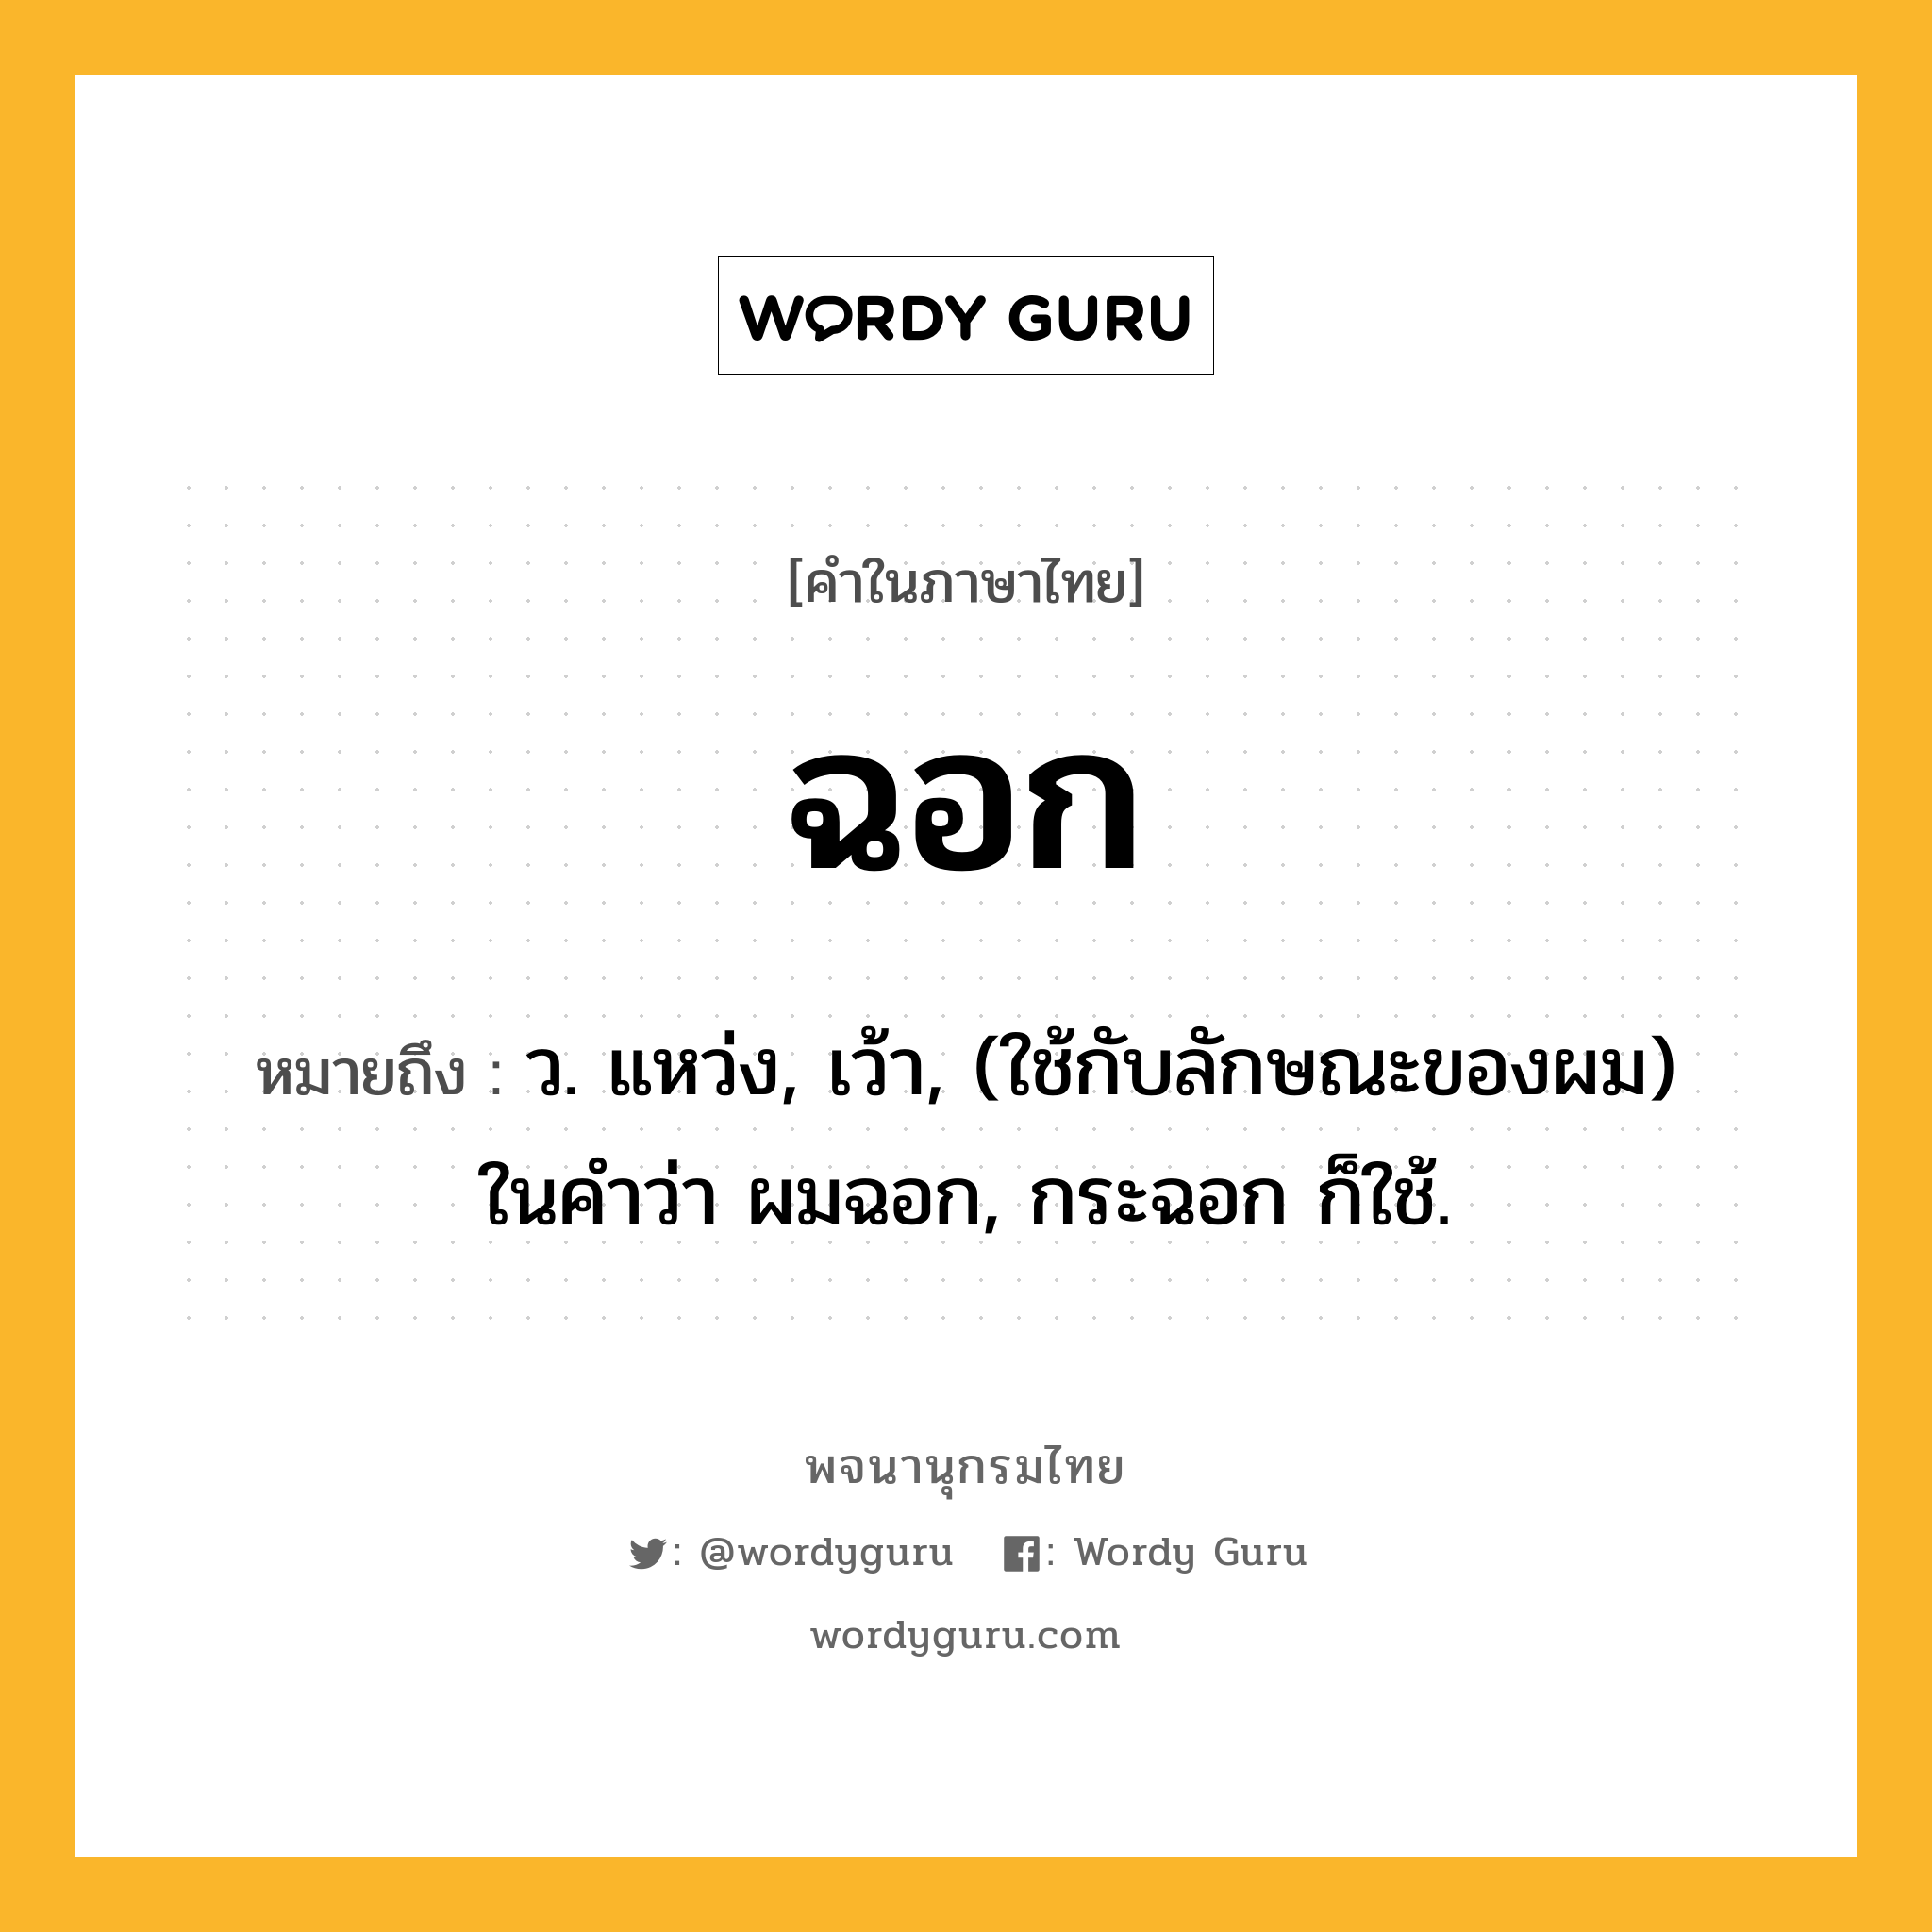 ฉอก หมายถึงอะไร?, คำในภาษาไทย ฉอก หมายถึง ว. แหว่ง, เว้า, (ใช้กับลักษณะของผม) ในคําว่า ผมฉอก, กระฉอก ก็ใช้.